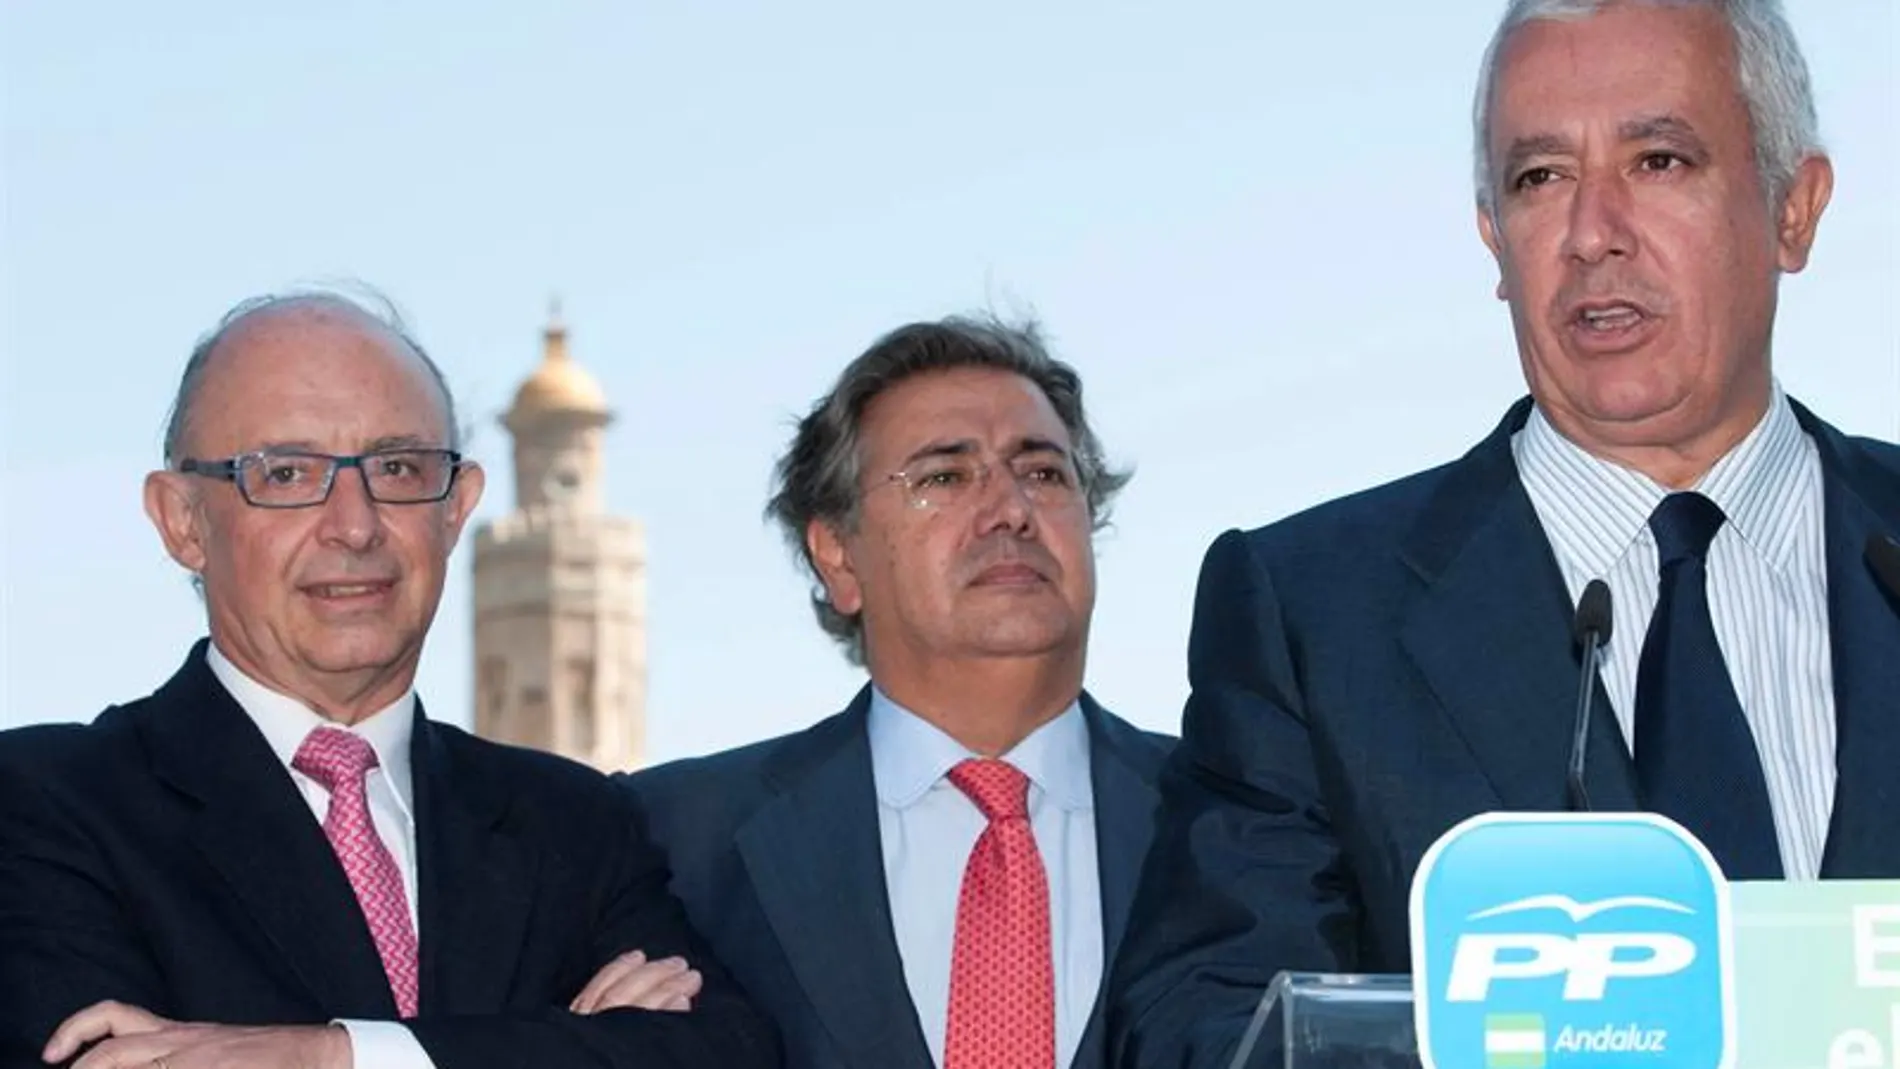  declaraciones del candidato de CiU Josep Antoni Duran Lleida